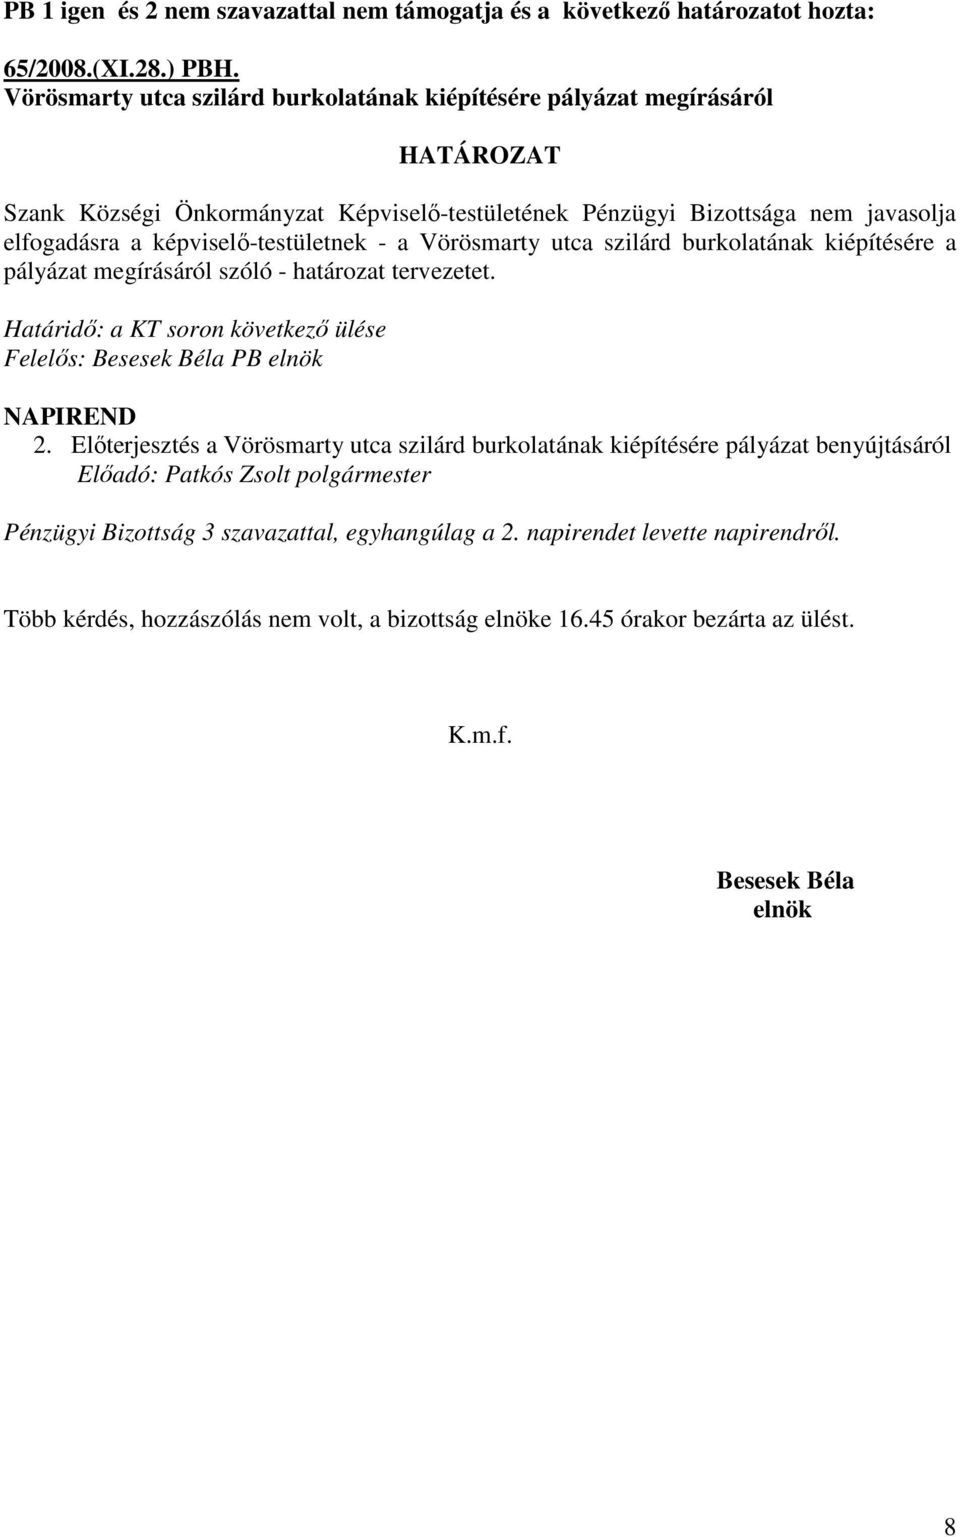 képviselı-testületnek - a Vörösmarty utca szilárd burkolatának kiépítésére a pályázat megírásáról szóló - határozat tervezetet.